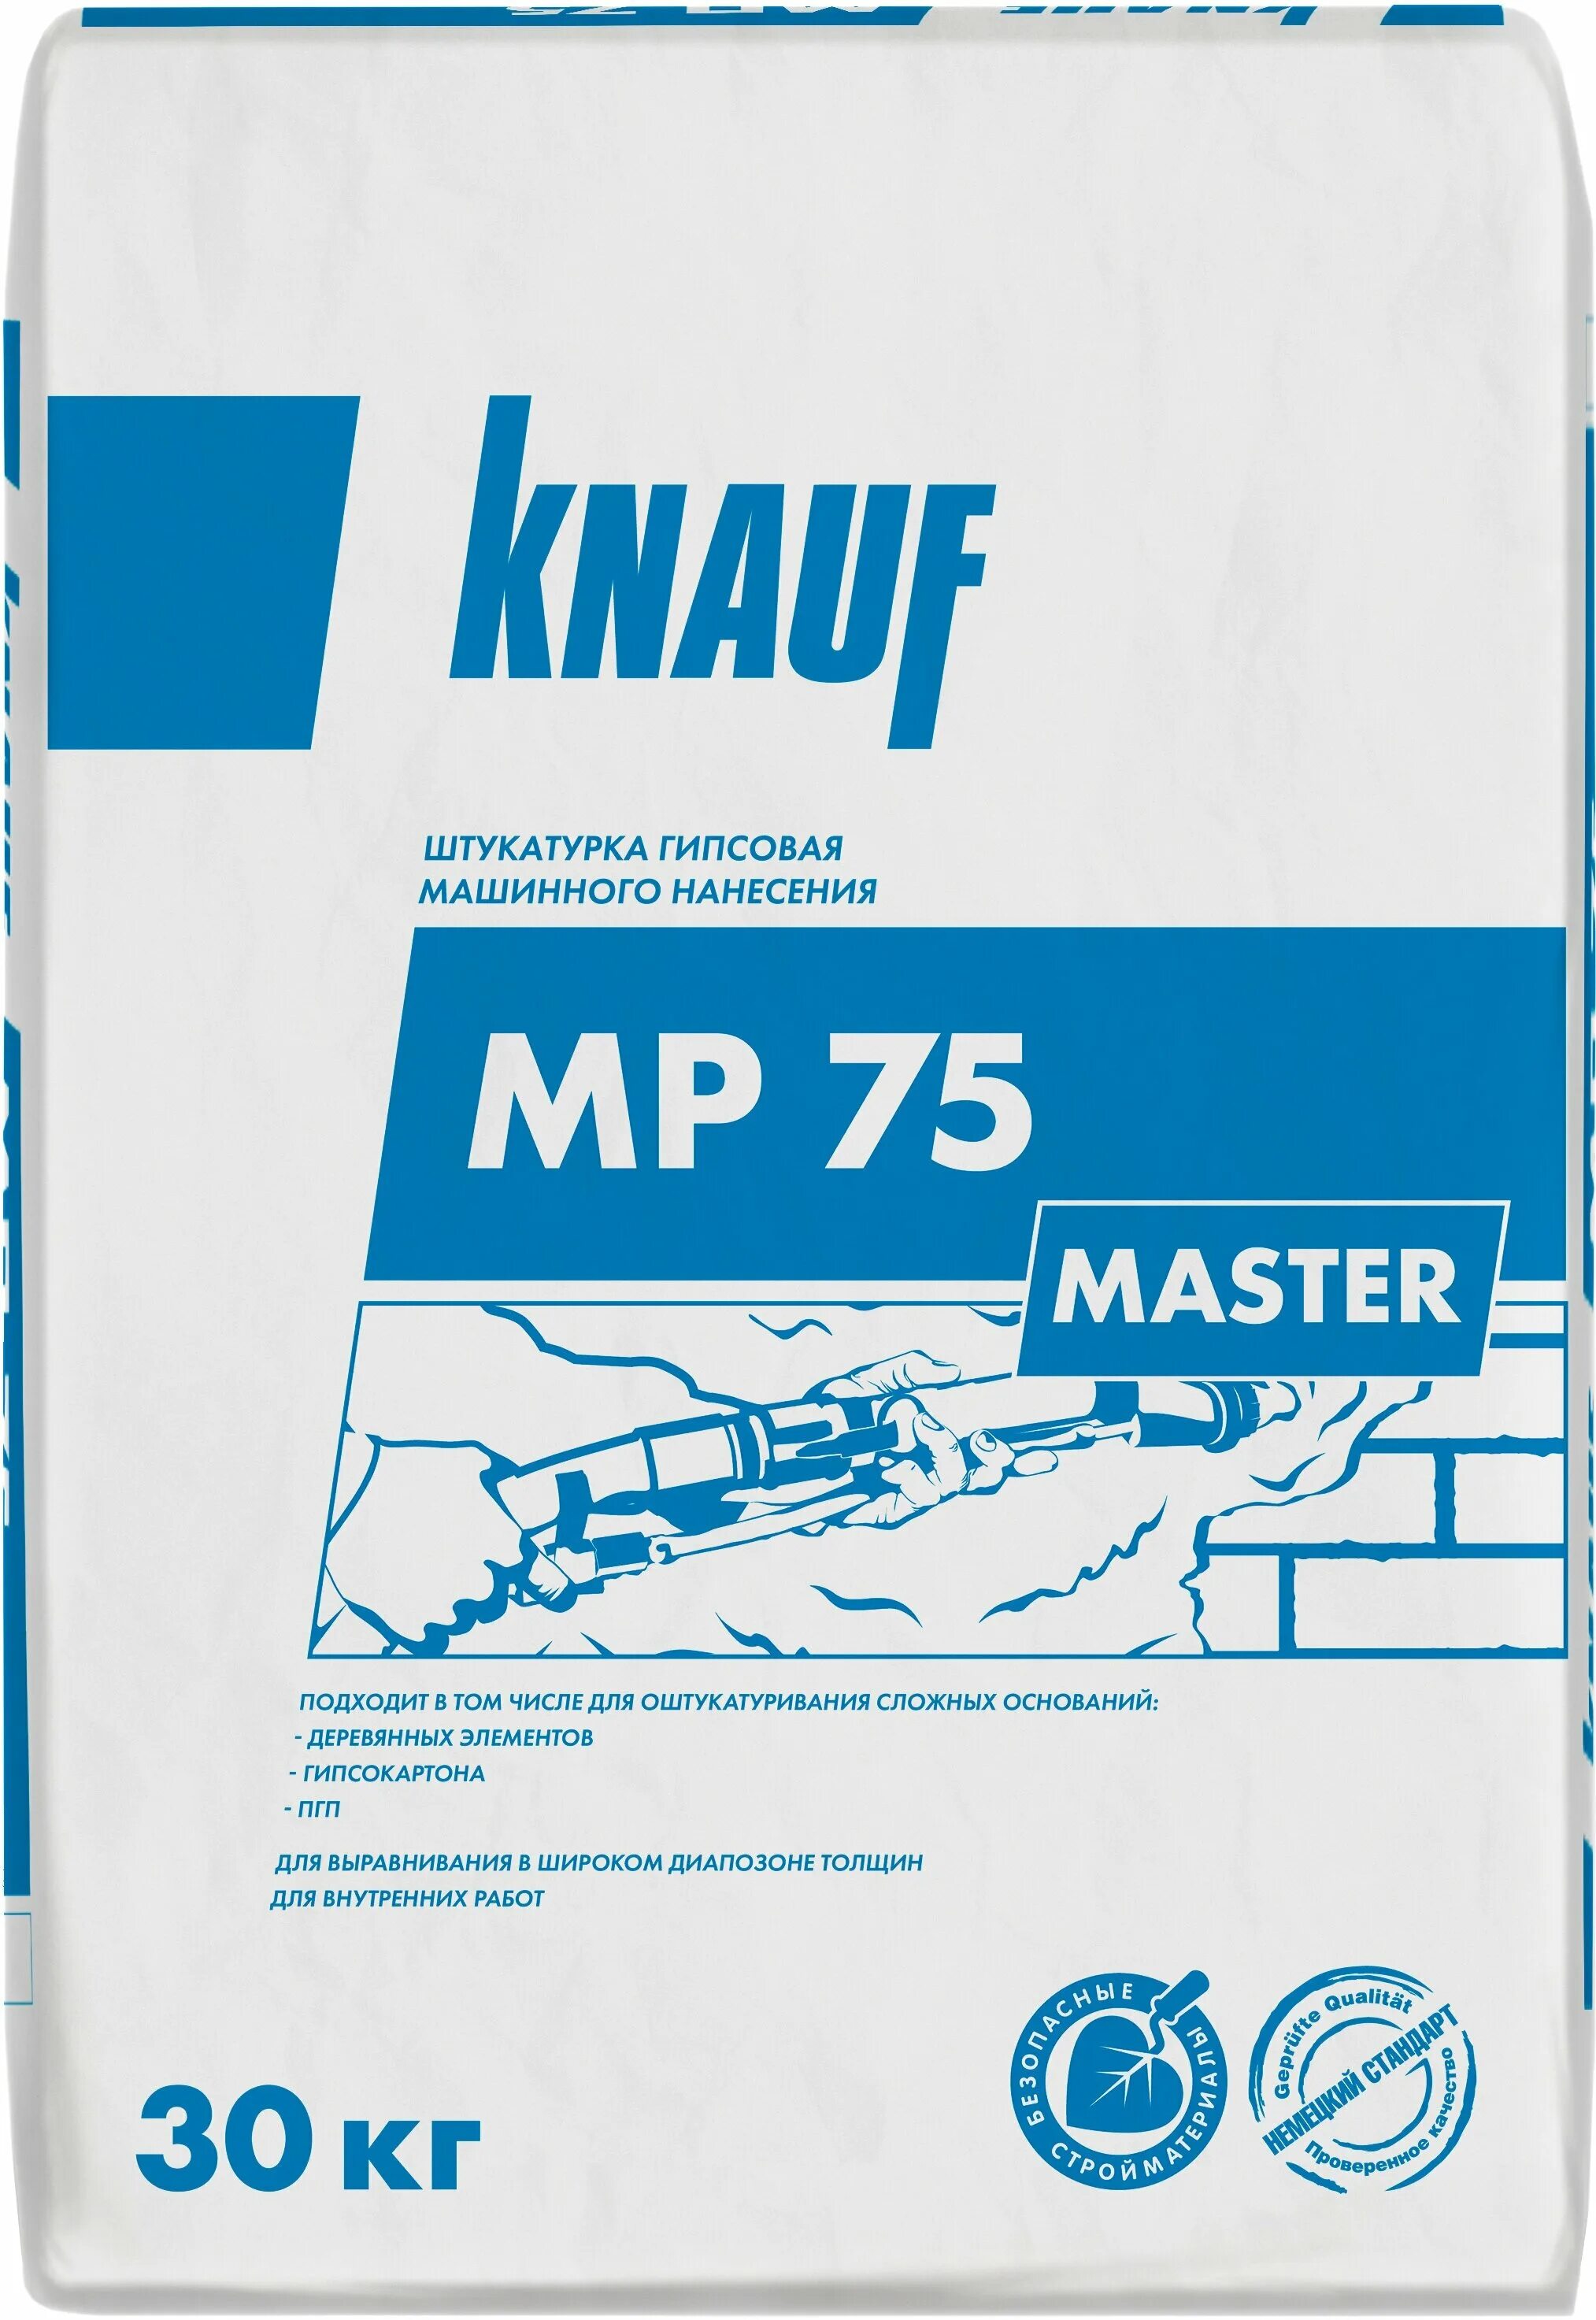 Кнауф мп 75 купить. Штукатурка гипсовая Knauf МП-75. МП-75 Кнауф штукатурка. Штукатурка механизированная гипсовая Knauf МП 75 мастер 30 кг. Штукатурка гипсовая Кнауф МП 75 30 кг.